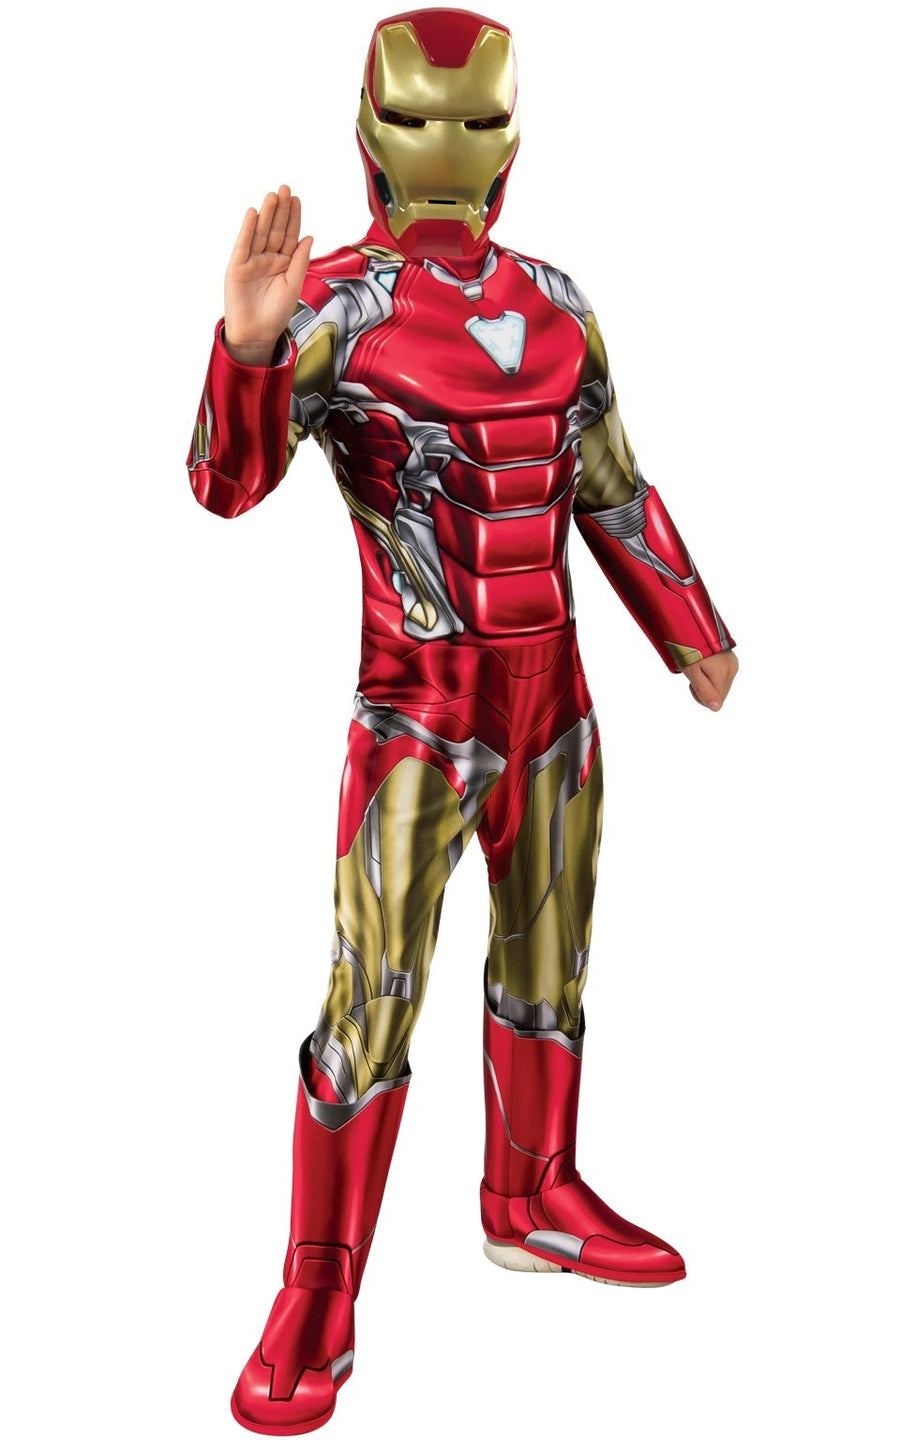 Iron Man Avengers Endgame Deluxe Boys Costume_1